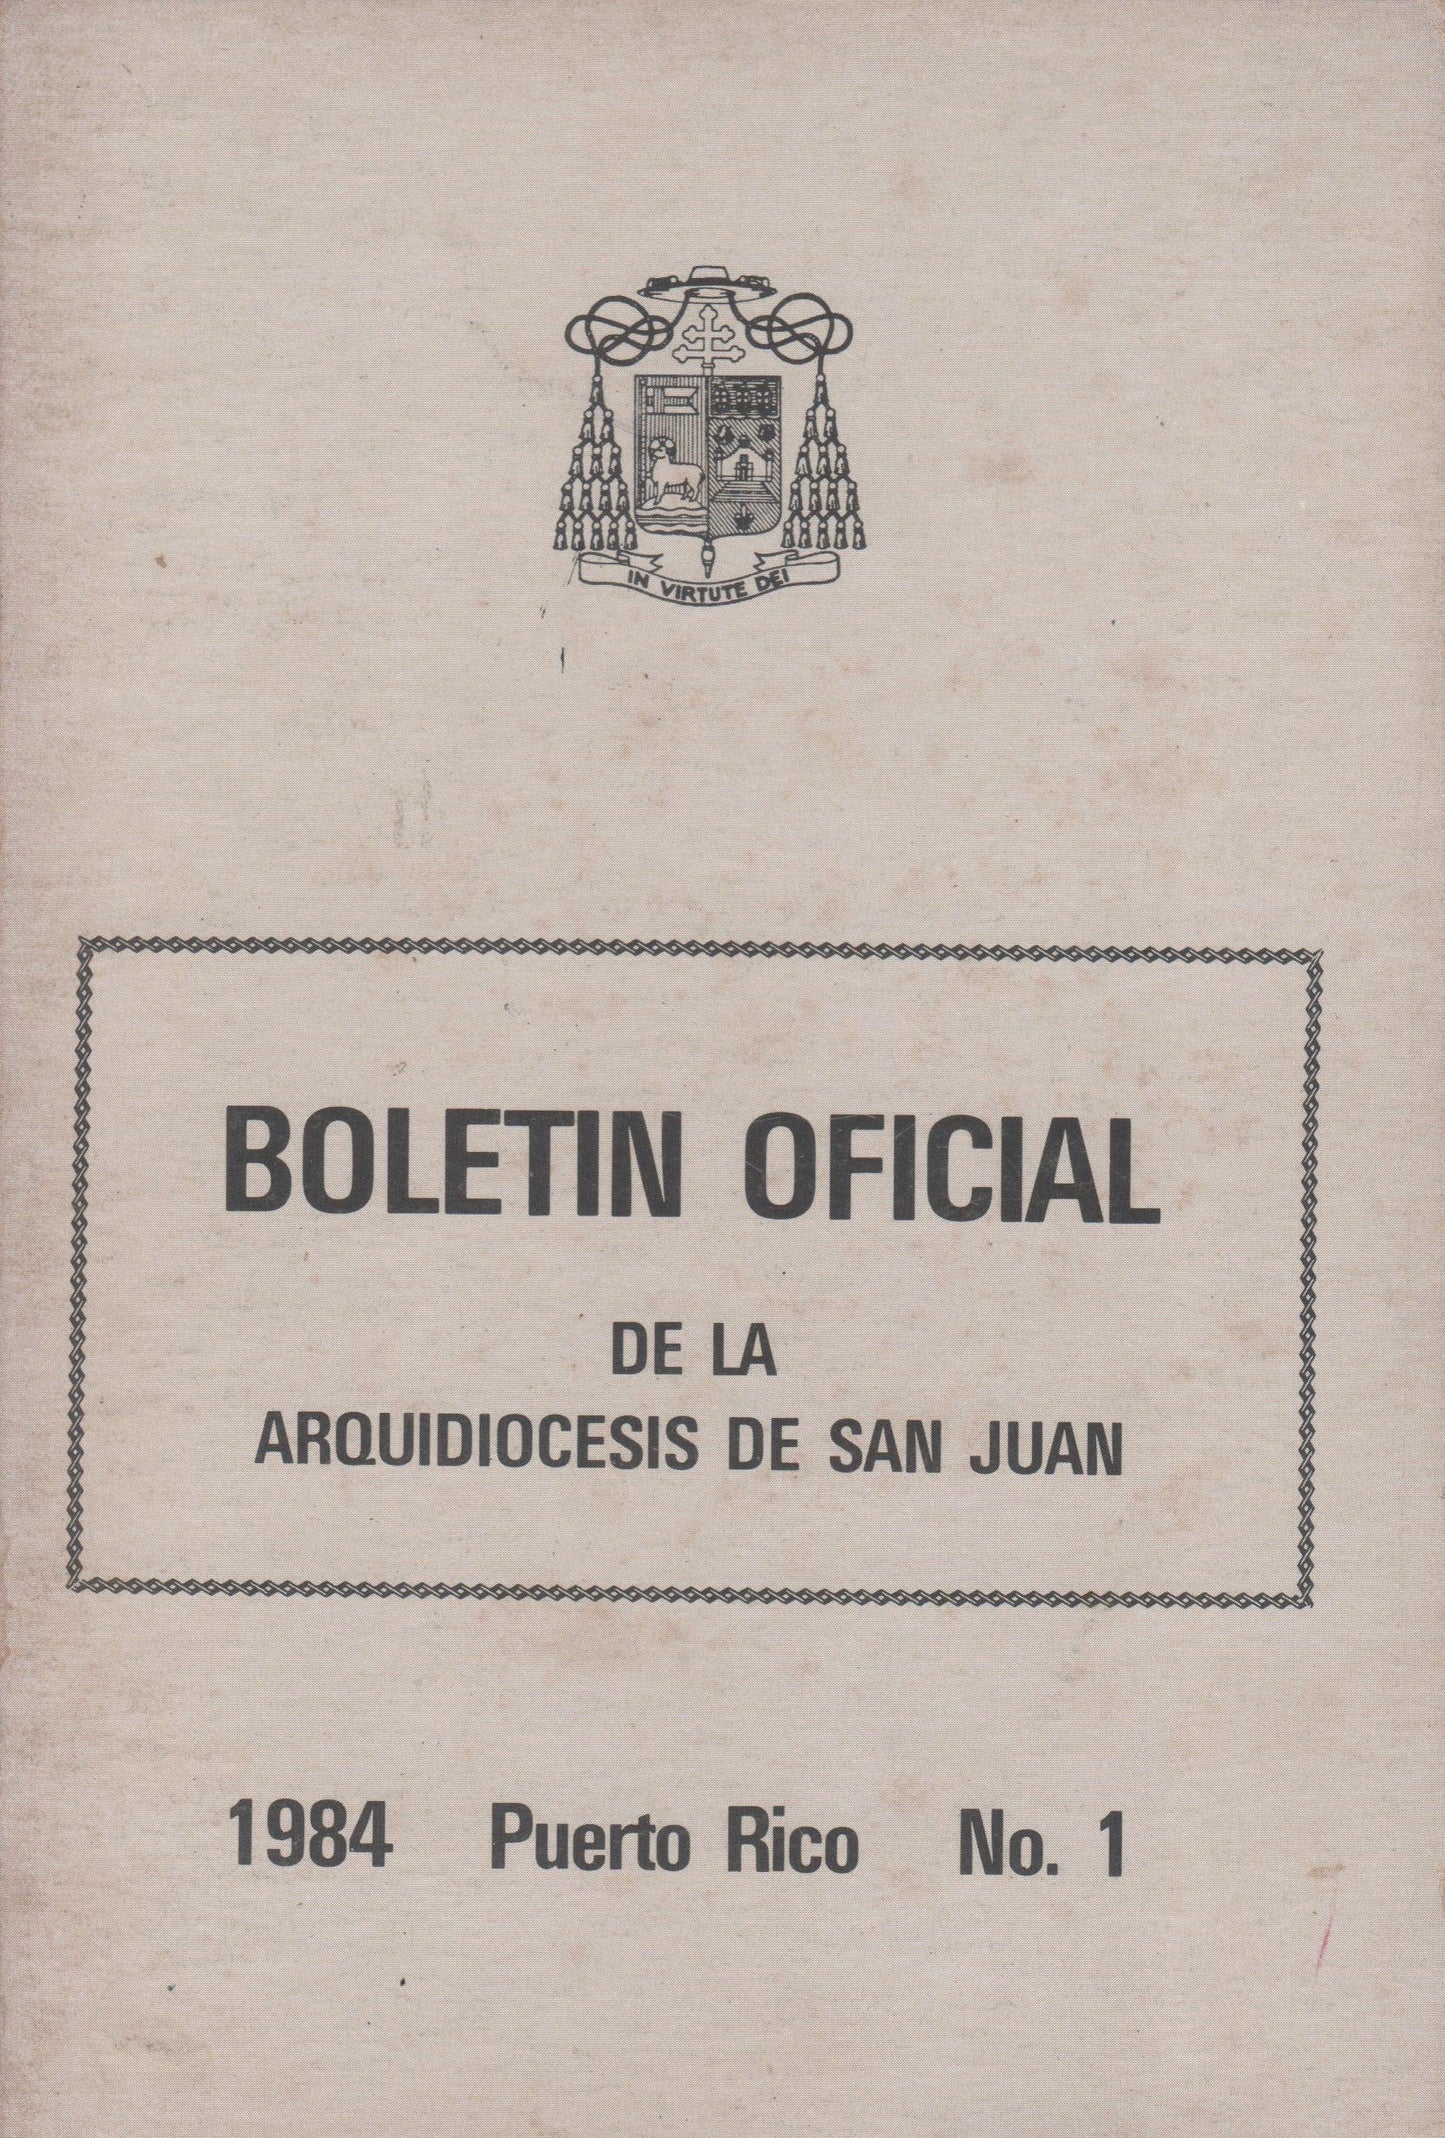 Boletín oficial de la Arquidiocesis de San Juan-1984-1